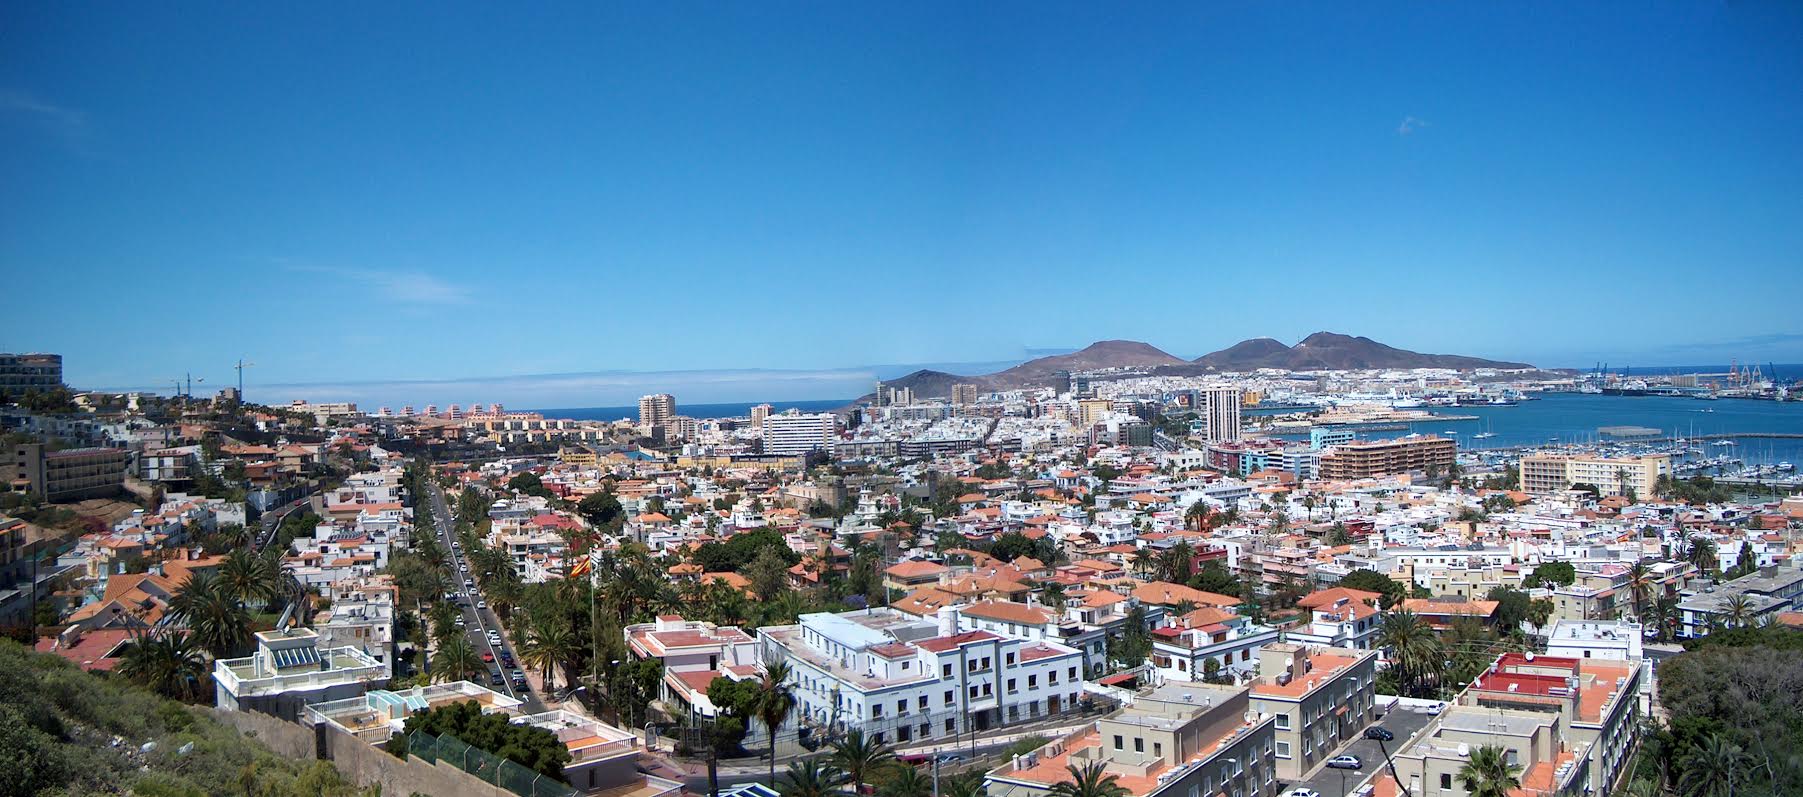 Las Palmas city panorama